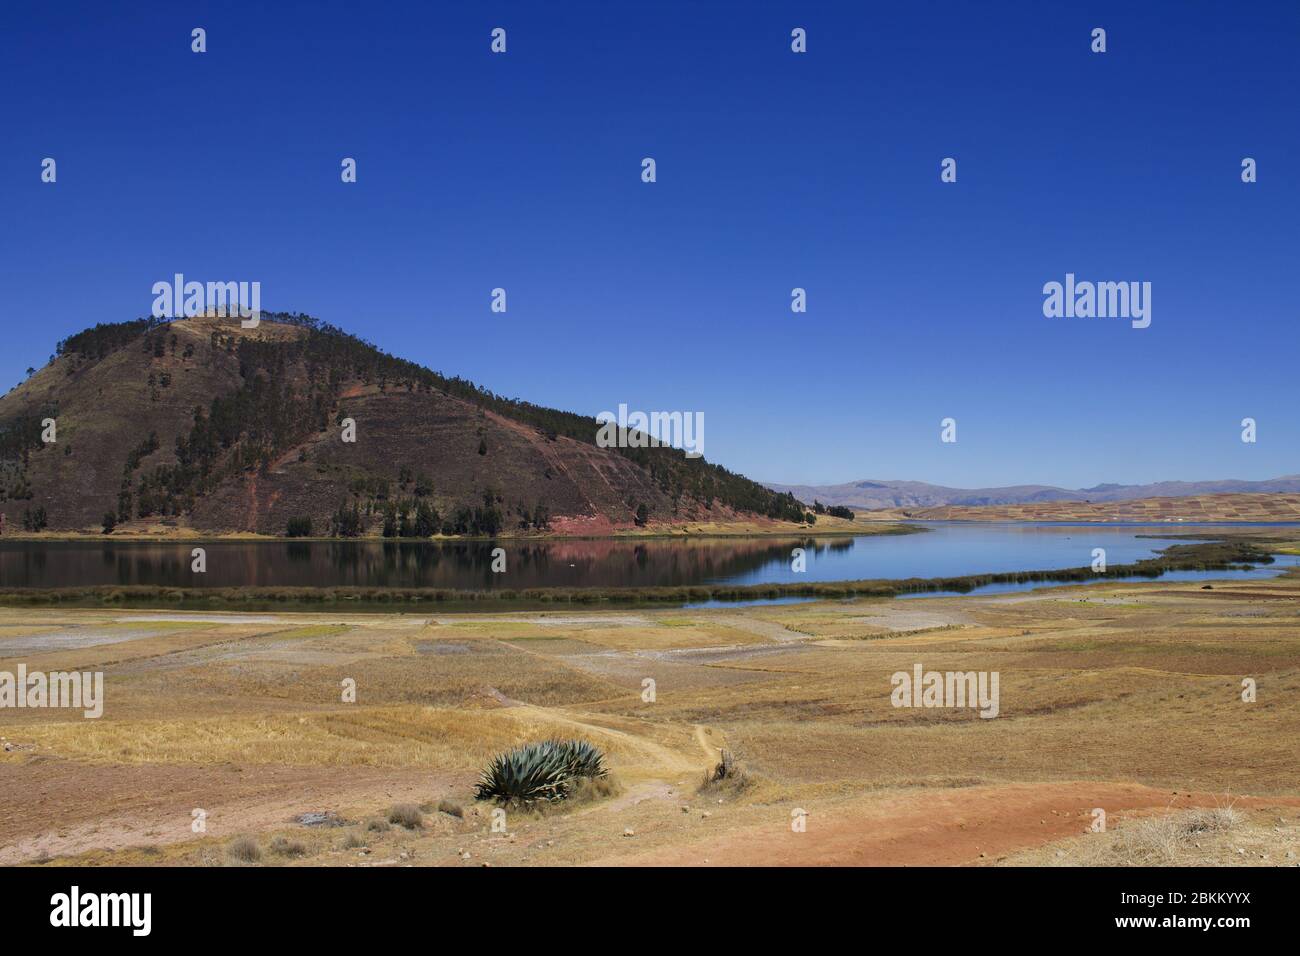 Paesaggio con una collina e un piccolo lago. Fotografia a Cuzco, Perú Foto Stock